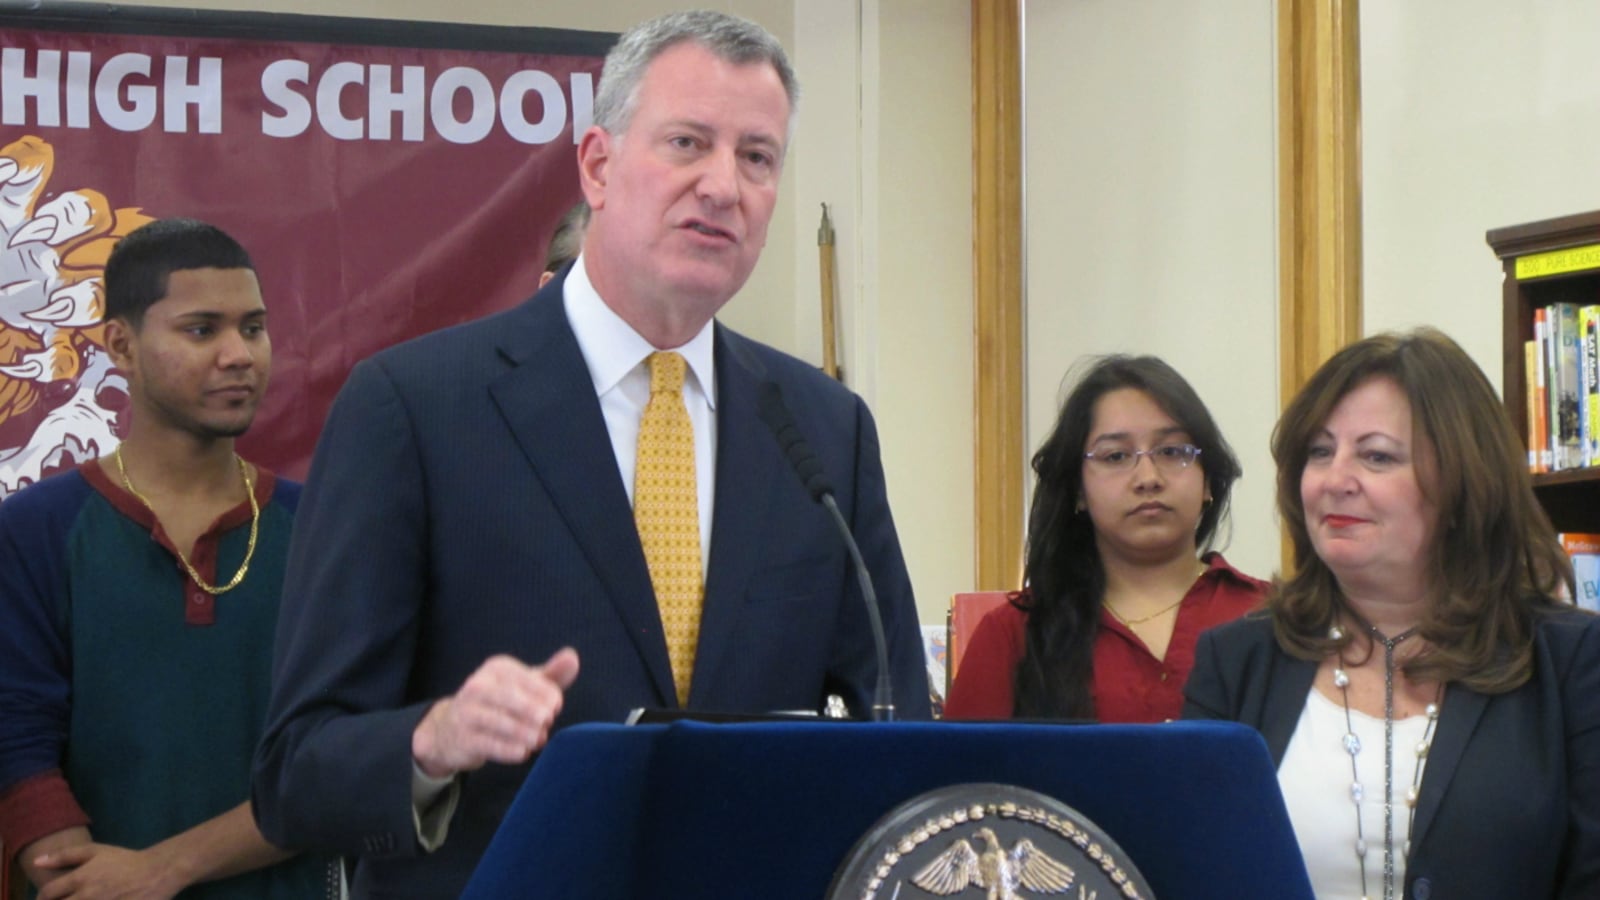 Mayor Bill de Blasio went to Richmond Hill High School in Queens to tout his school turnaround program.